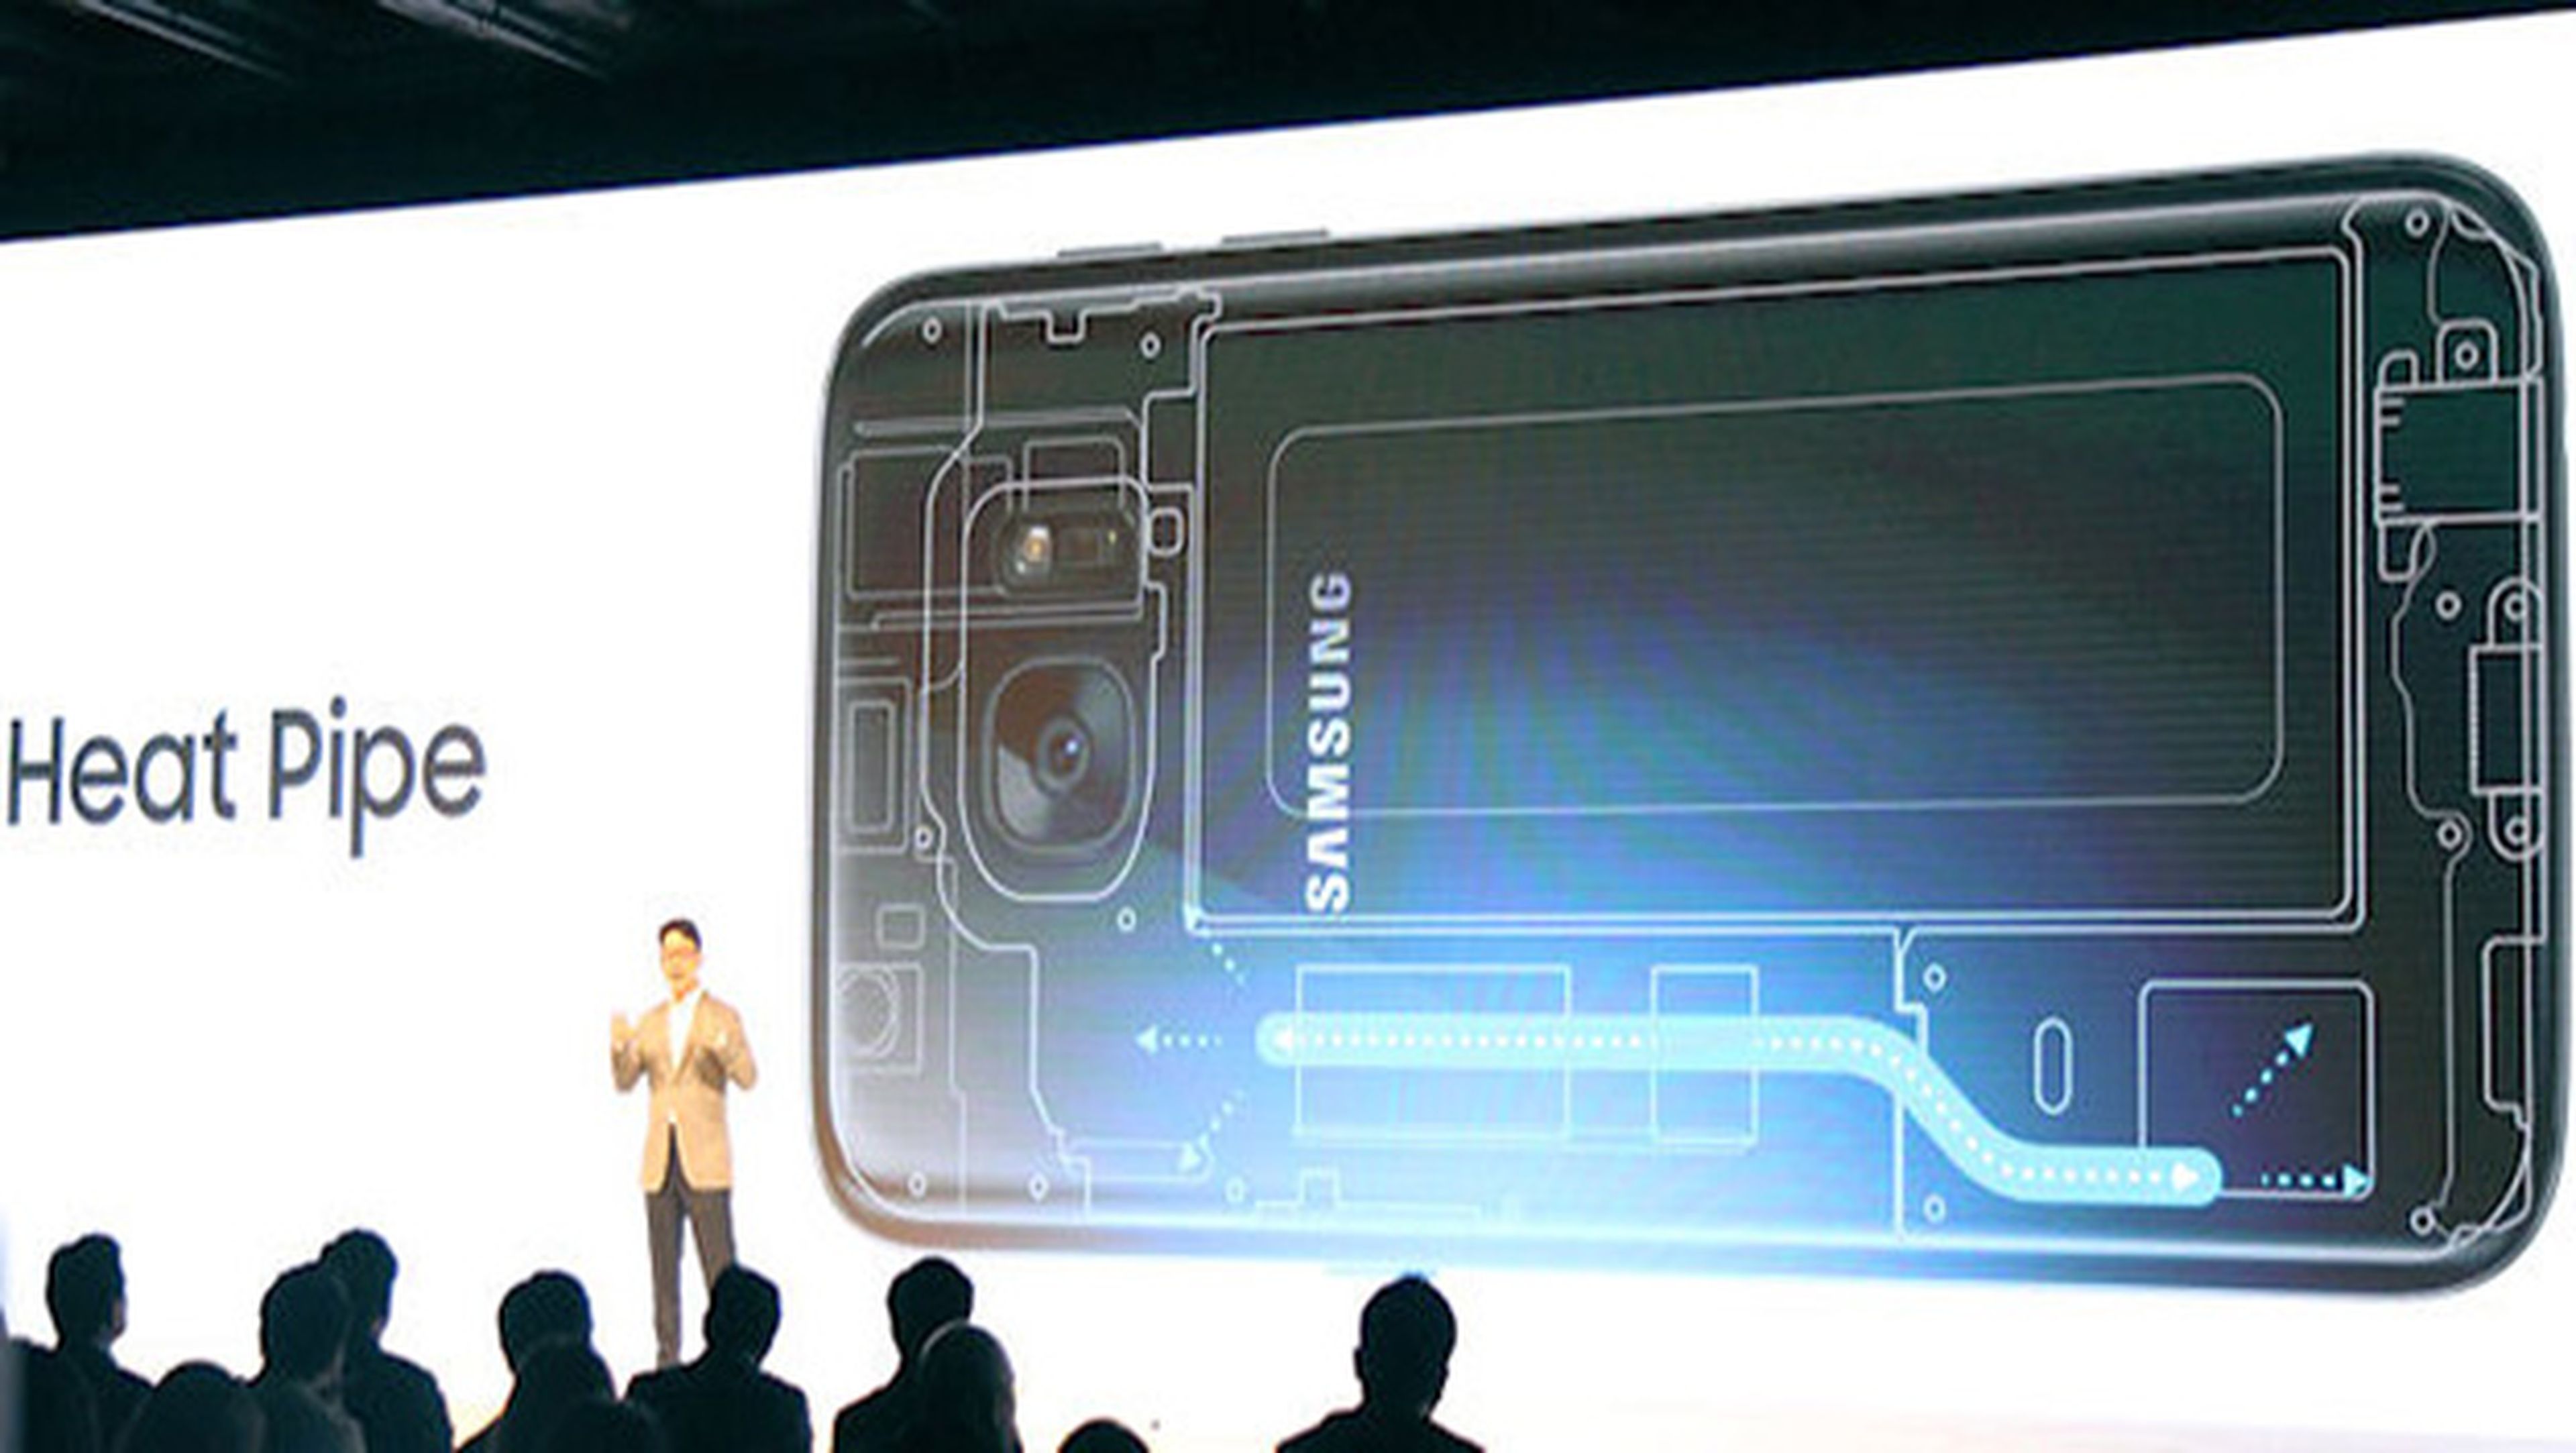 El Galaxy S9 tendrá tecnología contra el sobrecalentamiento